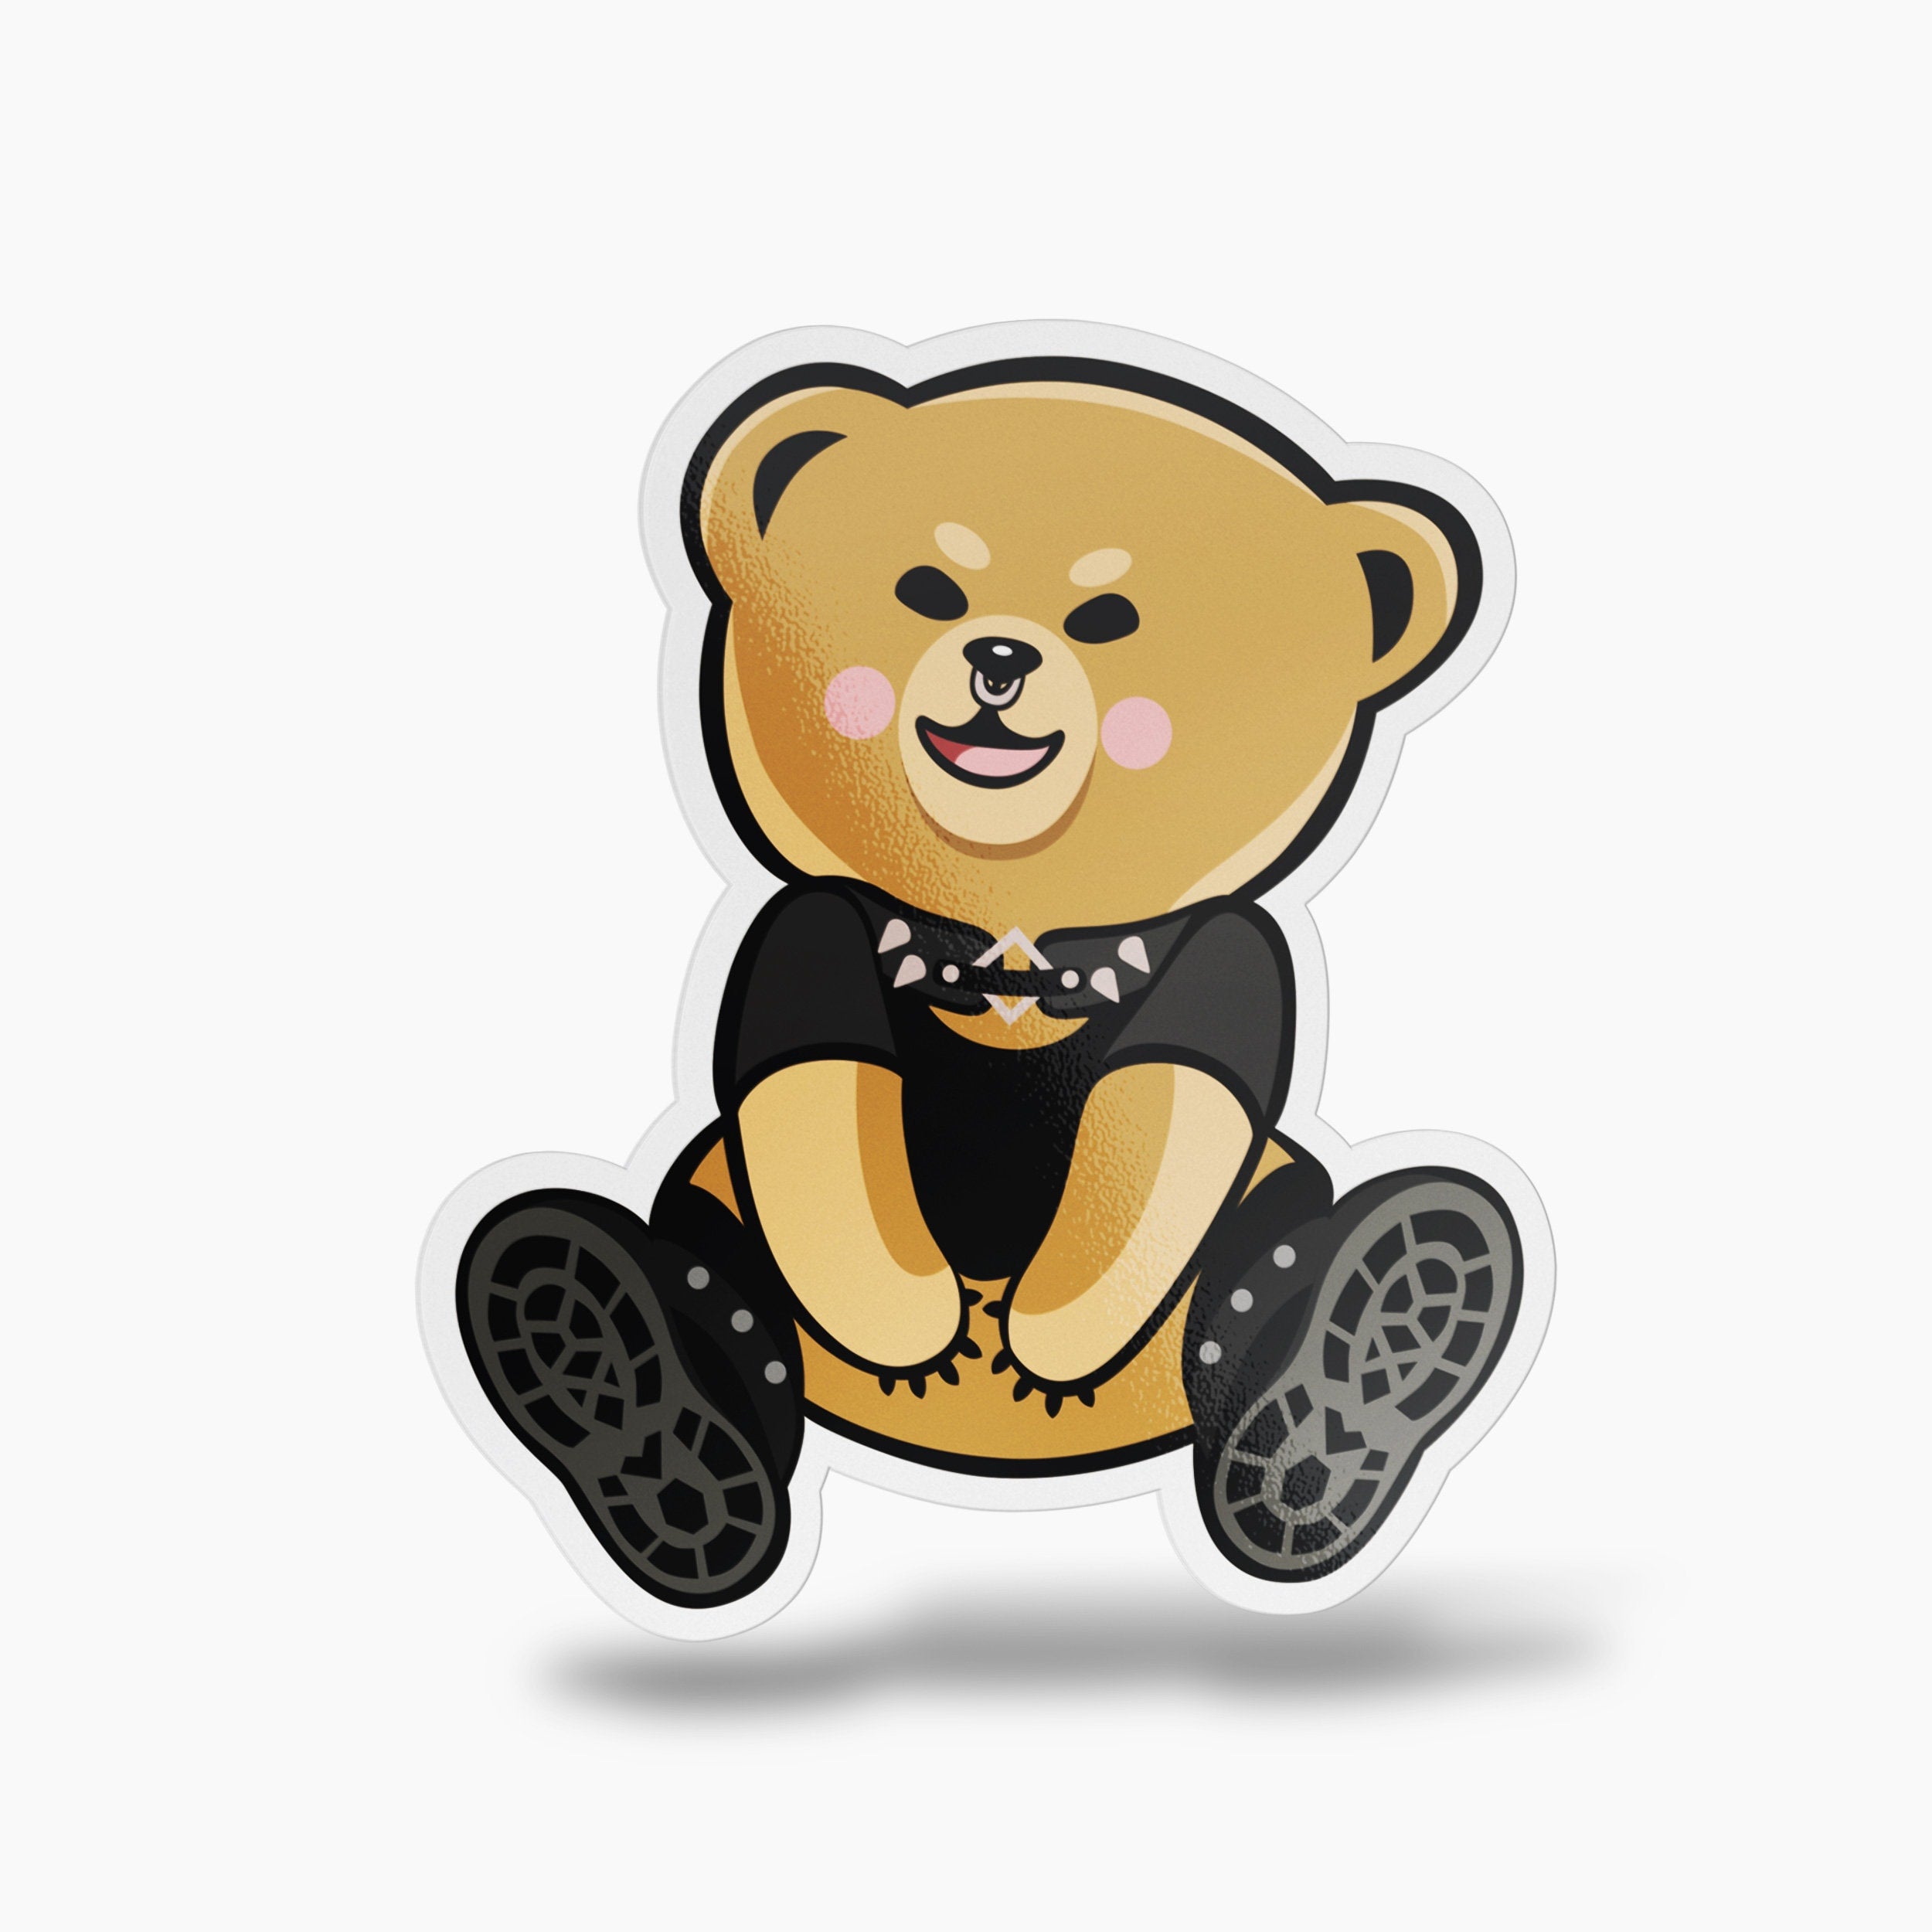 Goth Teddy Bear Sticker,  Cute Alt Stickers, Punk Rock Vinyl Stickers, Goth Gifts